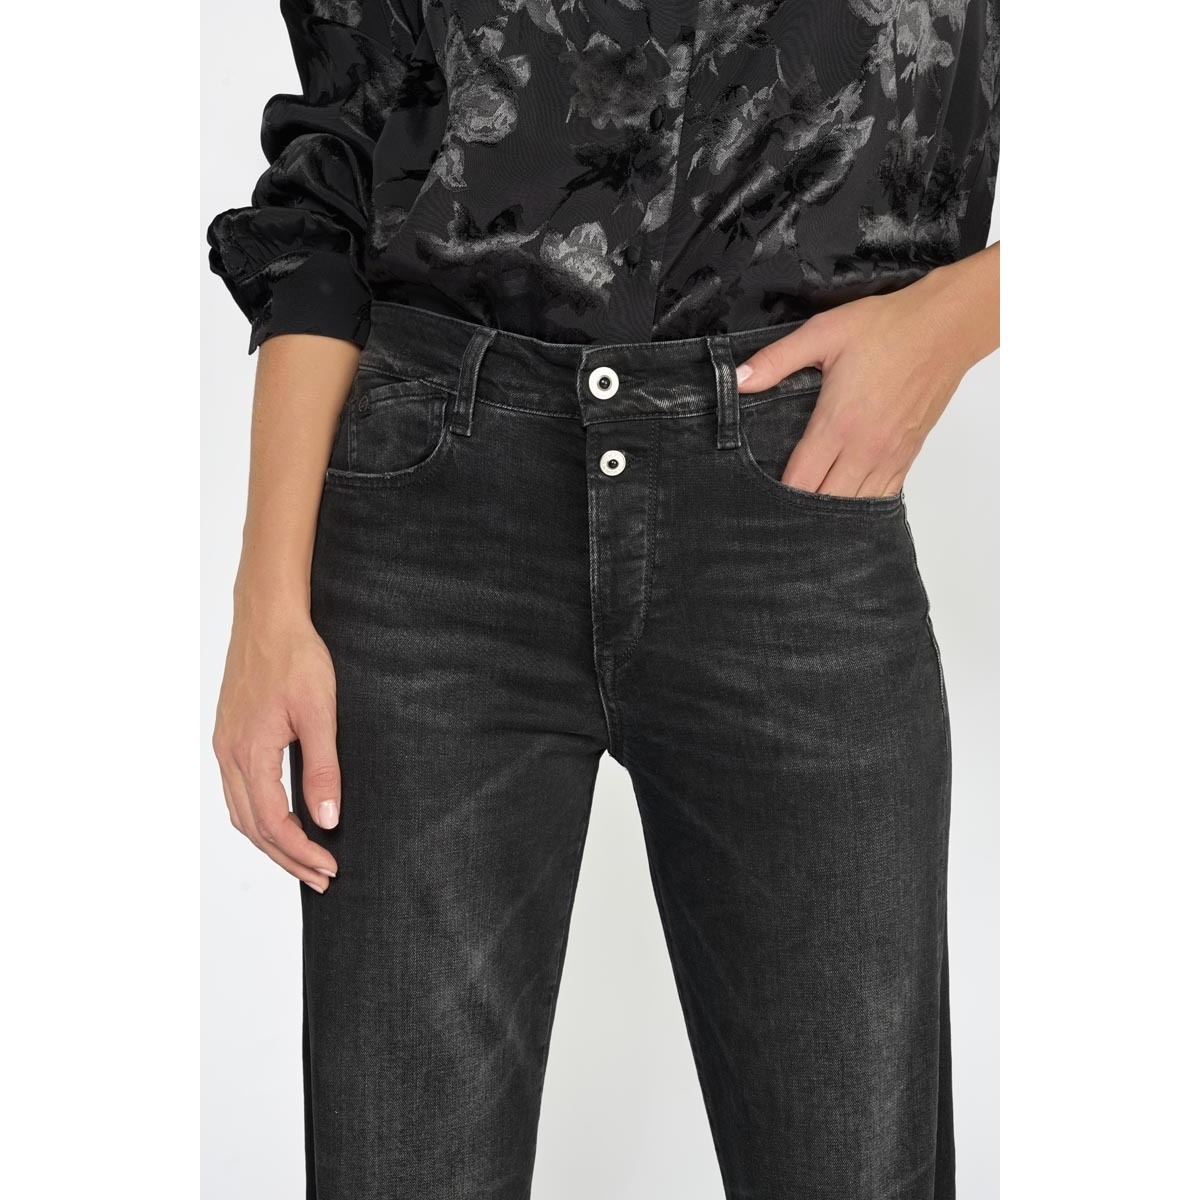 Le Temps des Cerises Noir Lux 400/19 mom taille haute jeans noir yT6qMUHe